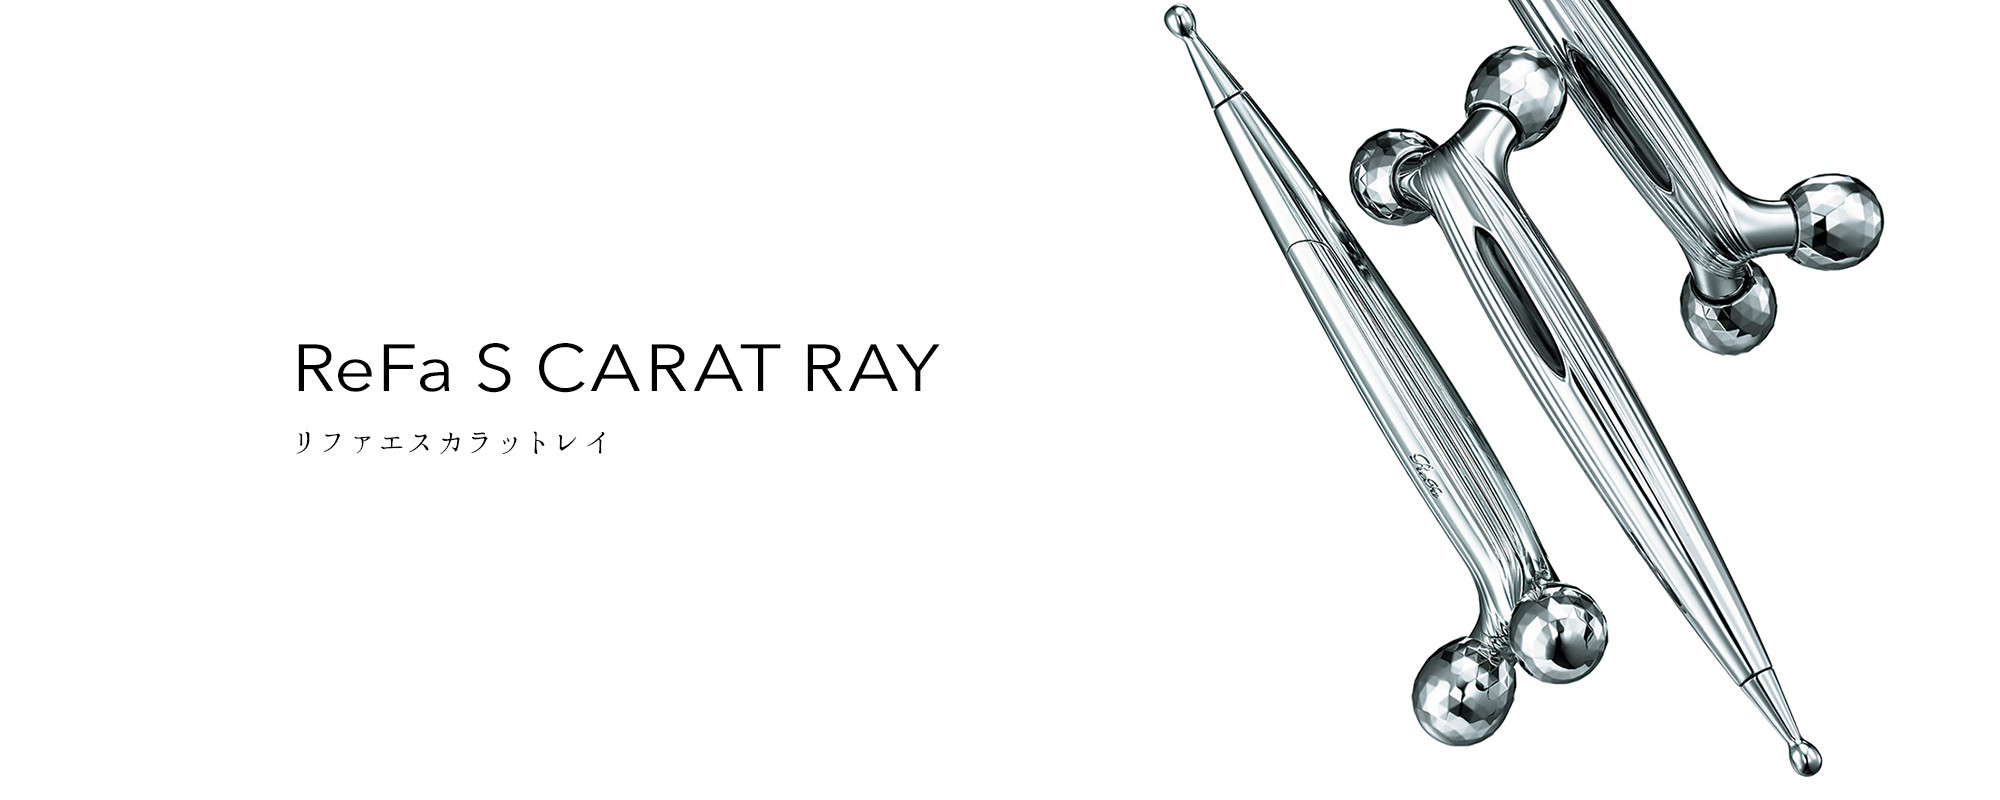 リファエスカラットレイ - ReFa S CARAT RAY | 商品情報 | ReFa 